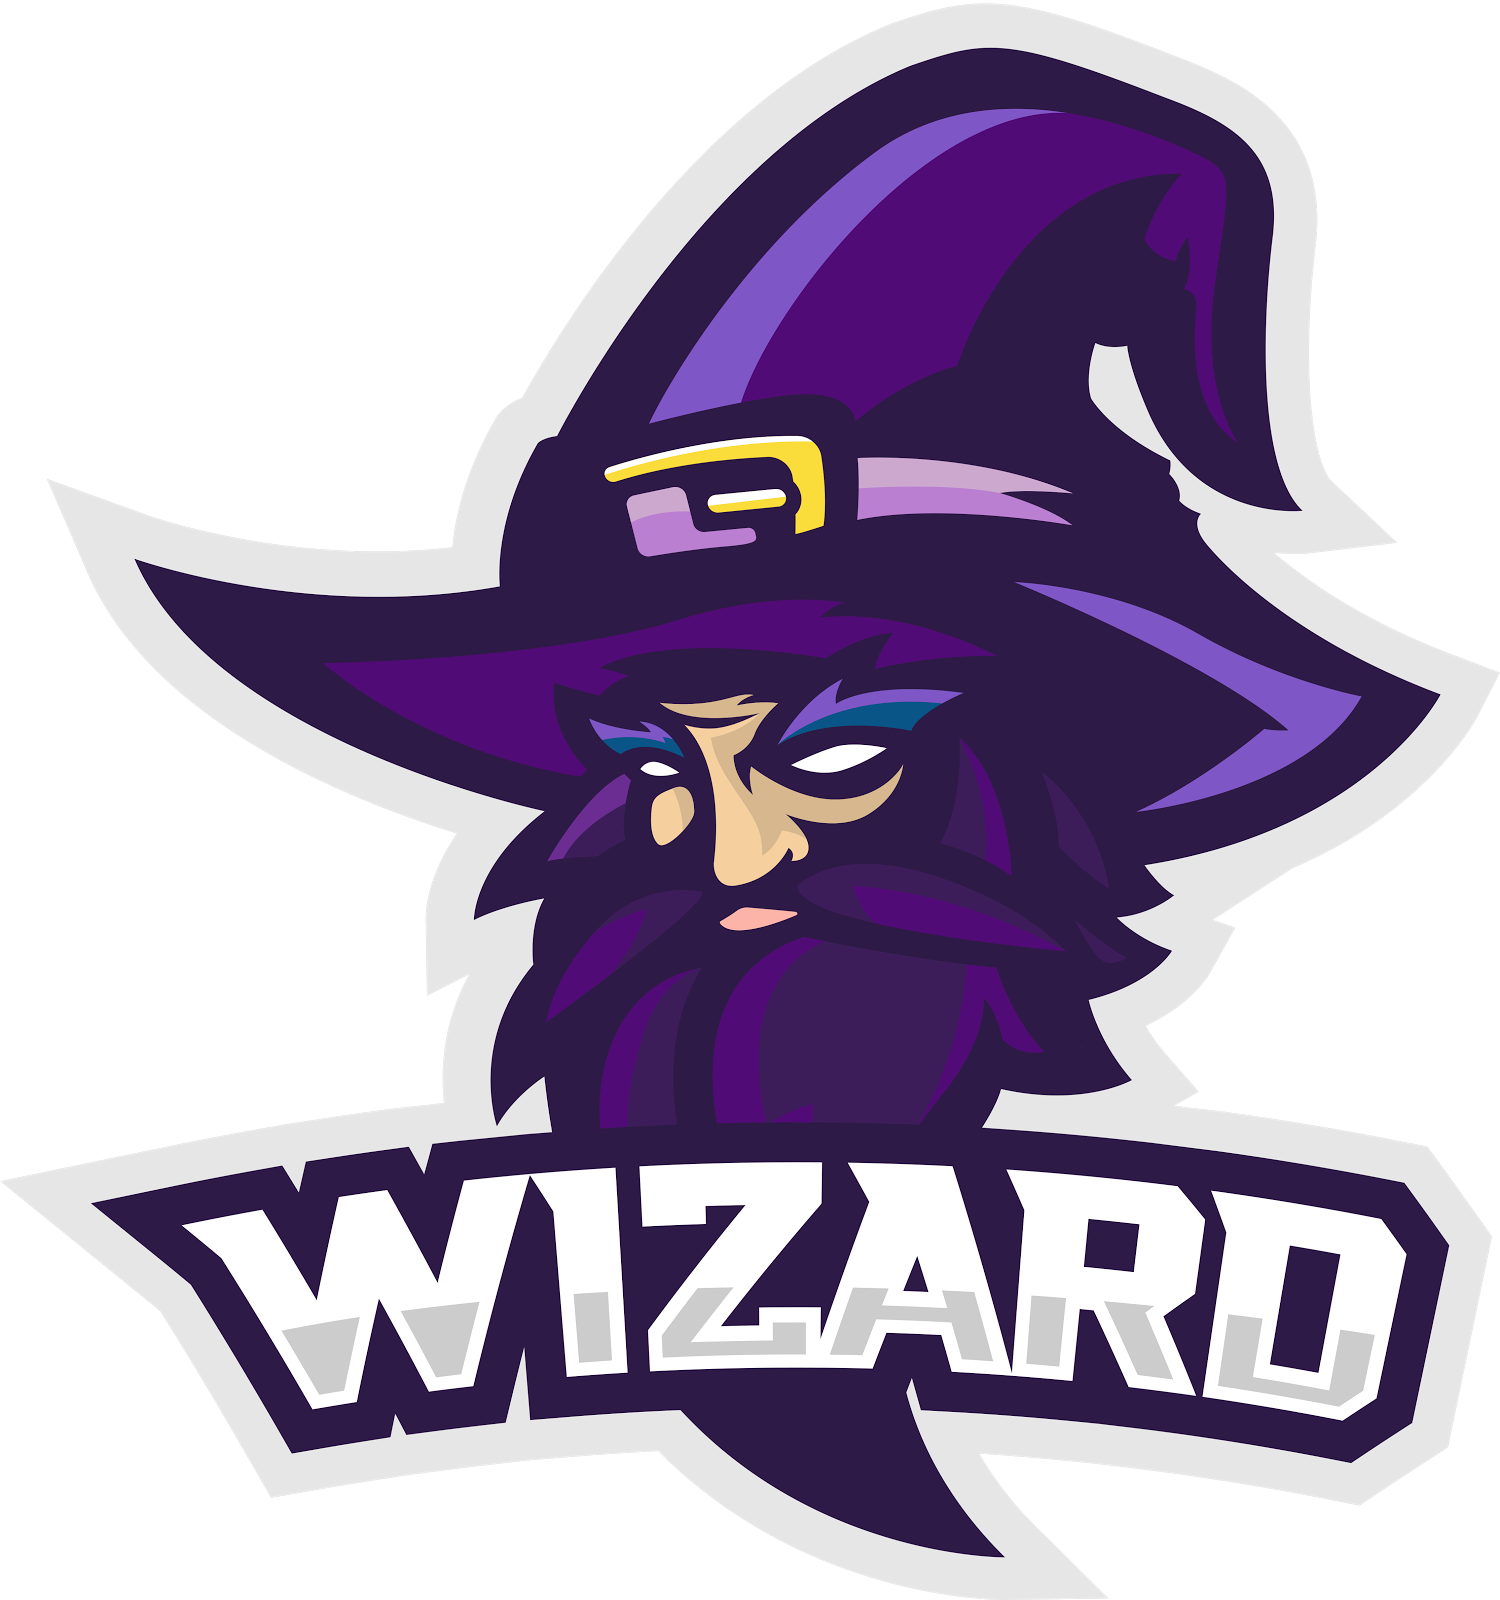 Lazy wizard. Визард. Wizard Esports logo. Ава Визард. W1zard аватарка.